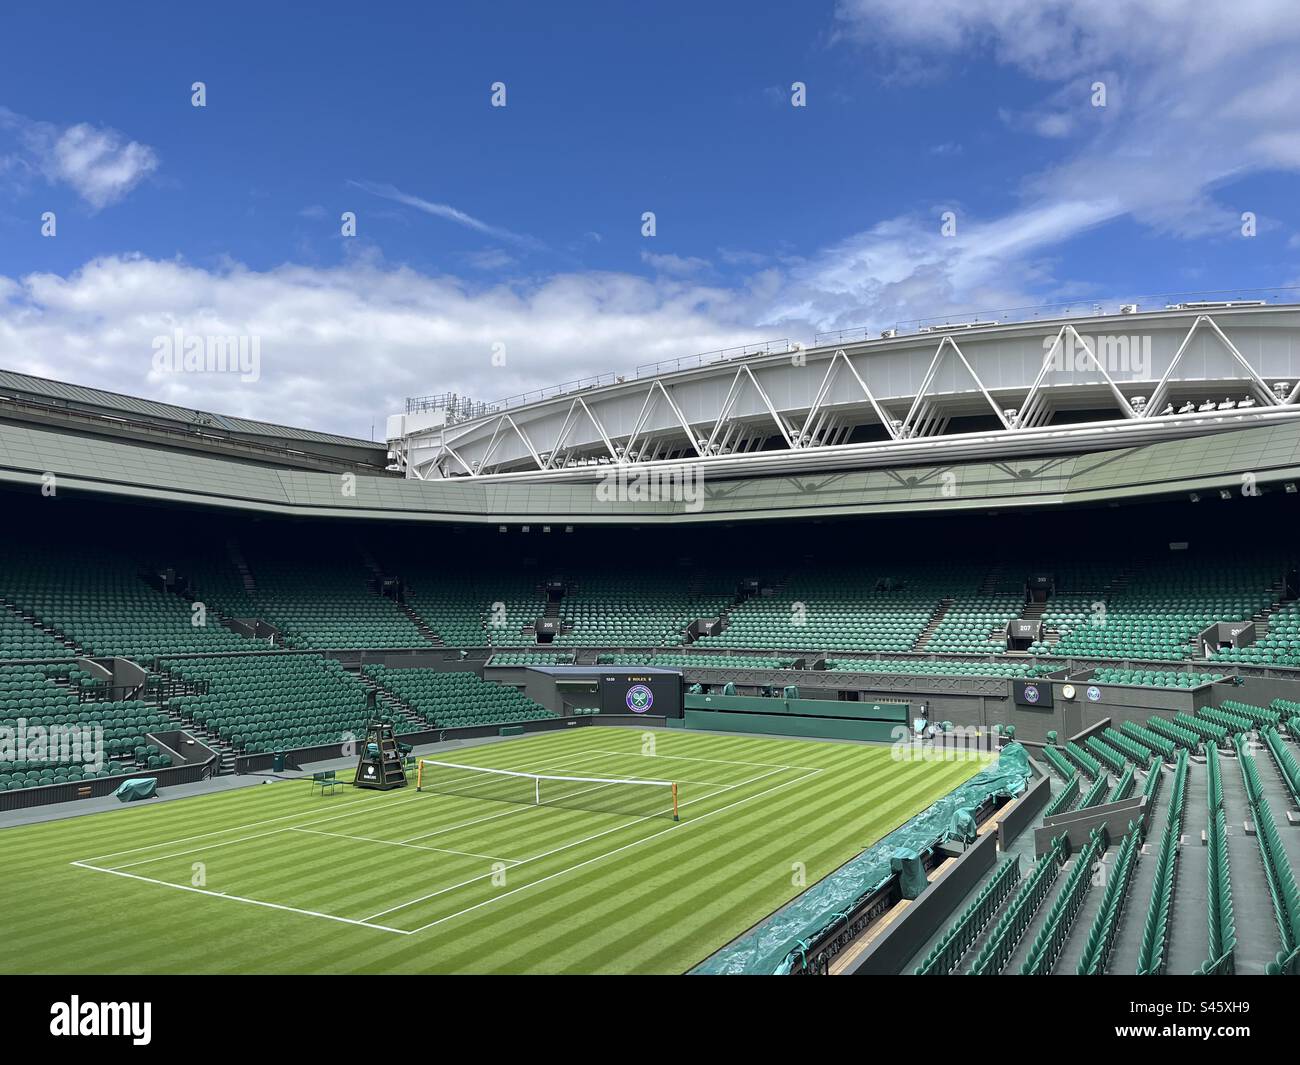 Una vista generale del campo centrale dell'All England Lawn Tennis Club (AELTC) a Wimbledon, a sud-ovest di Londra. Foto Stock